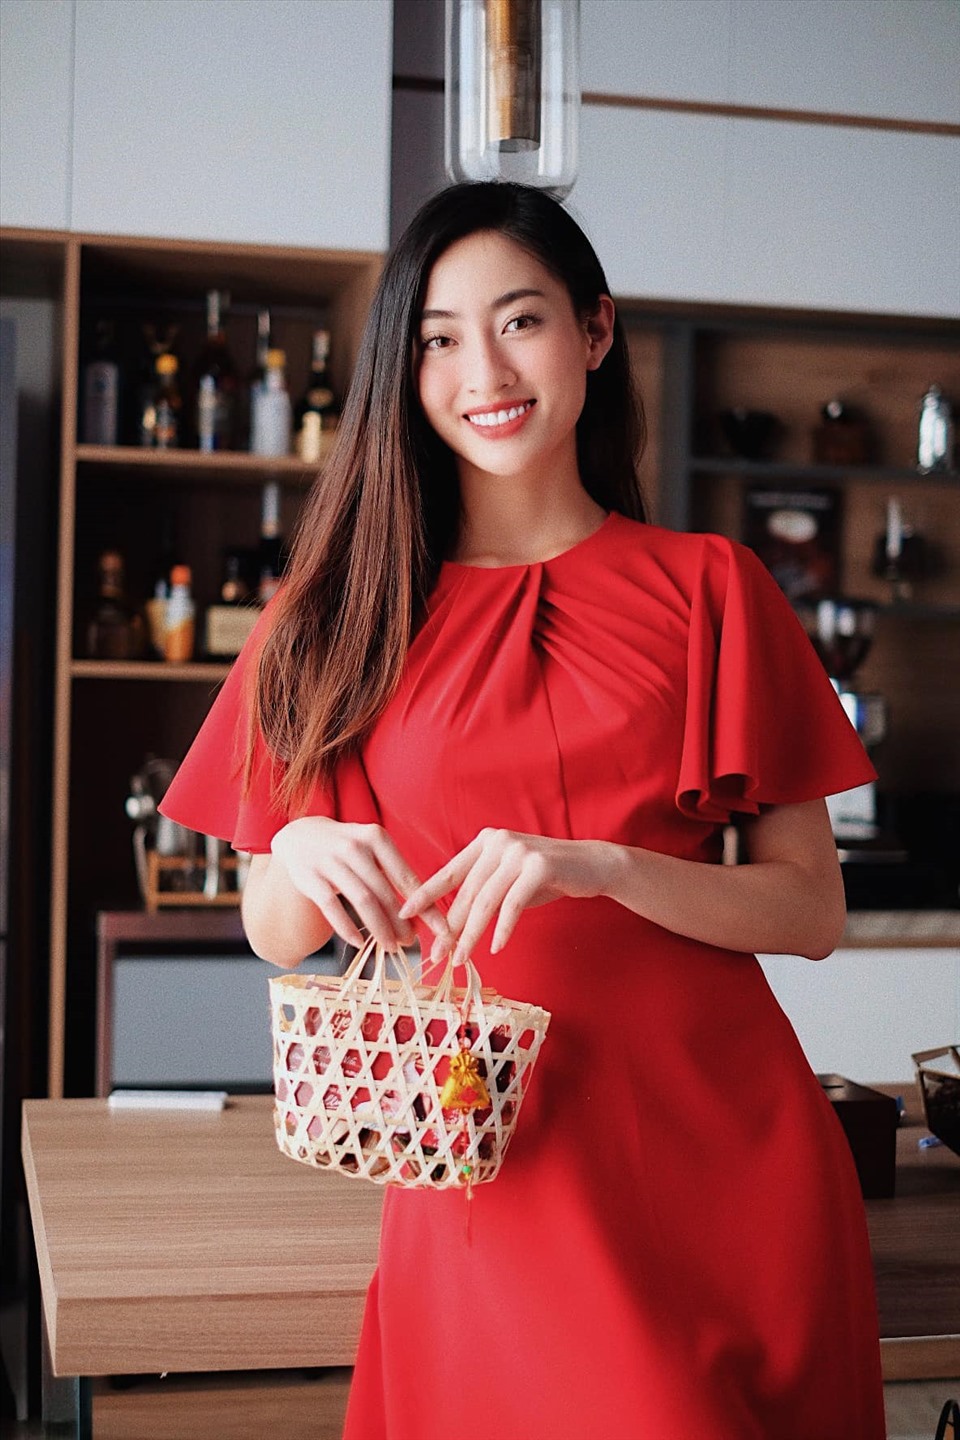 Hoa hậu Lương Thùy Linh đã tự tay chuẩn bị món quà tết nhỏ xinh để gửi đến người thân và bạn bè.